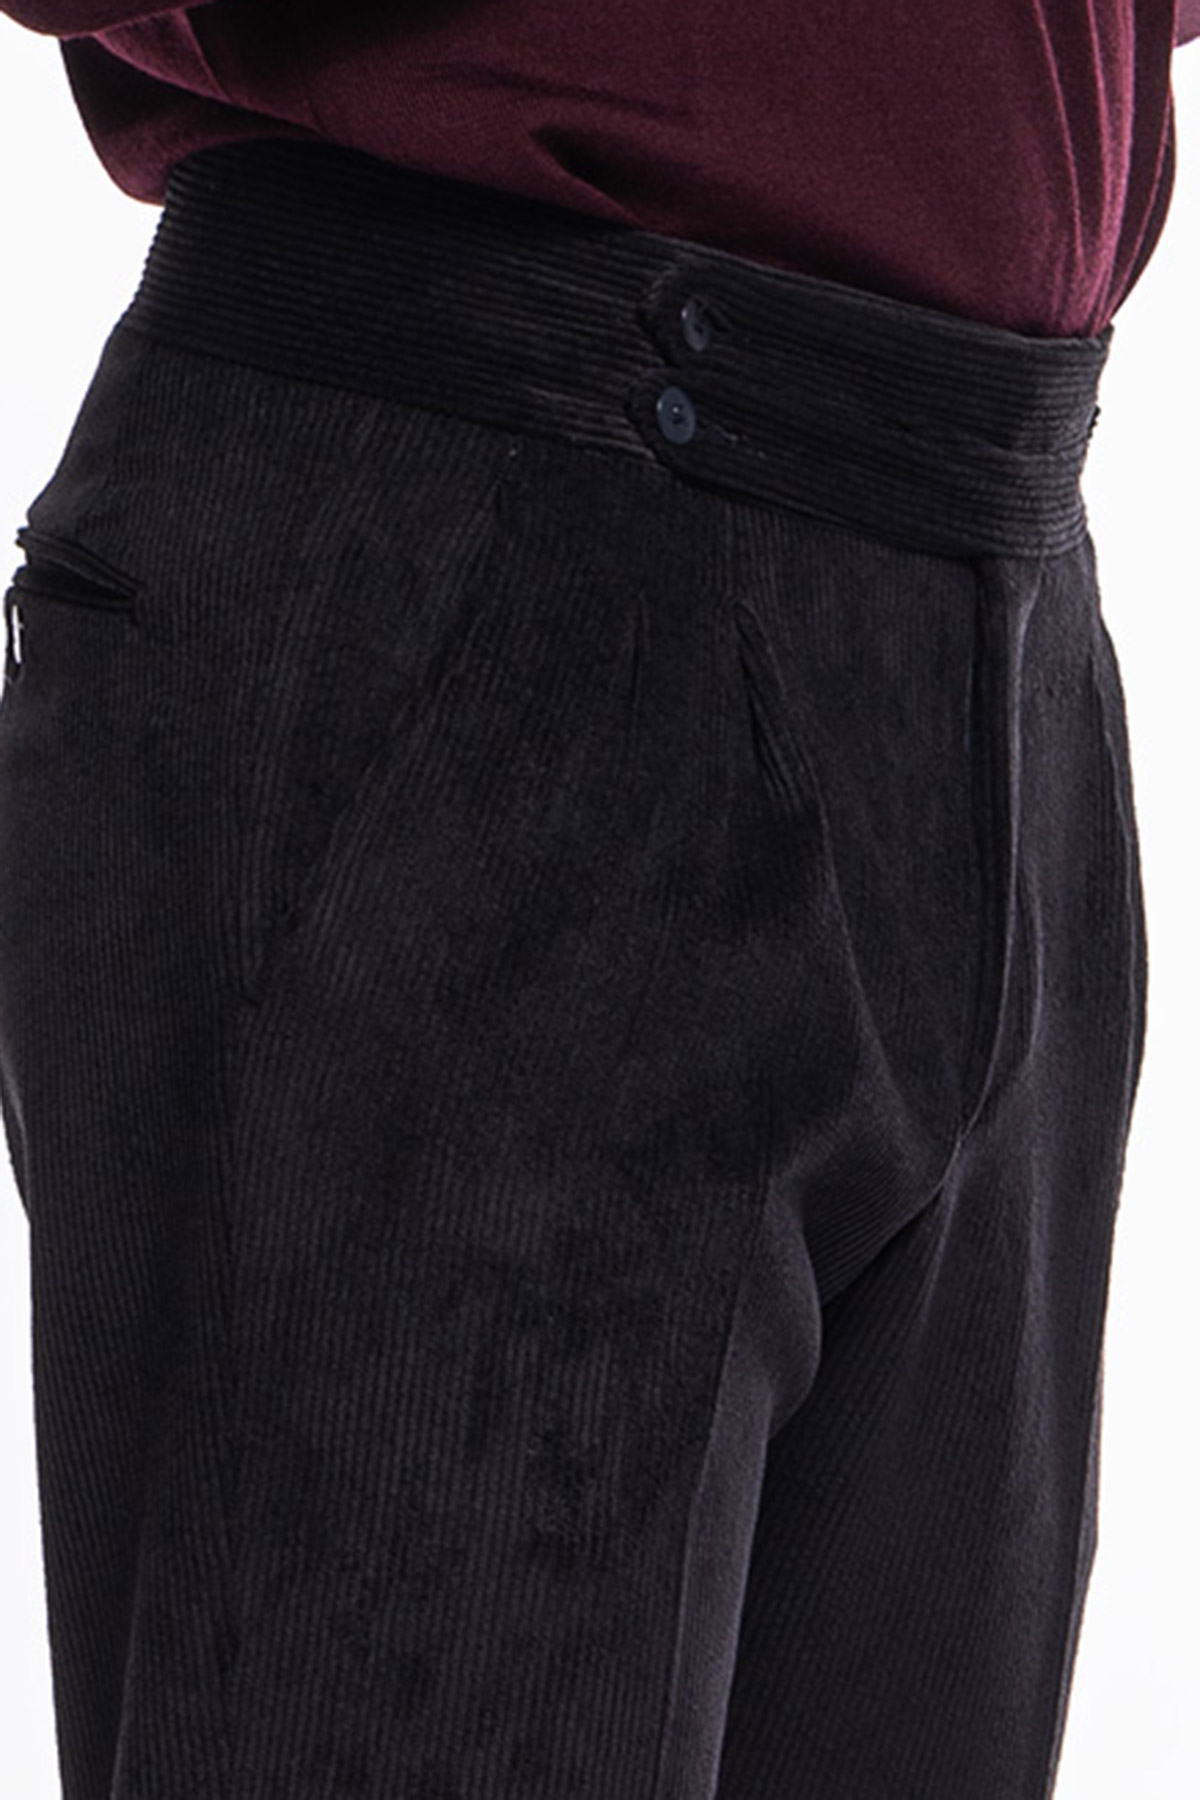 Pantalone uomo nero vita alta biforcato doppia pinces in velluto a costine strette